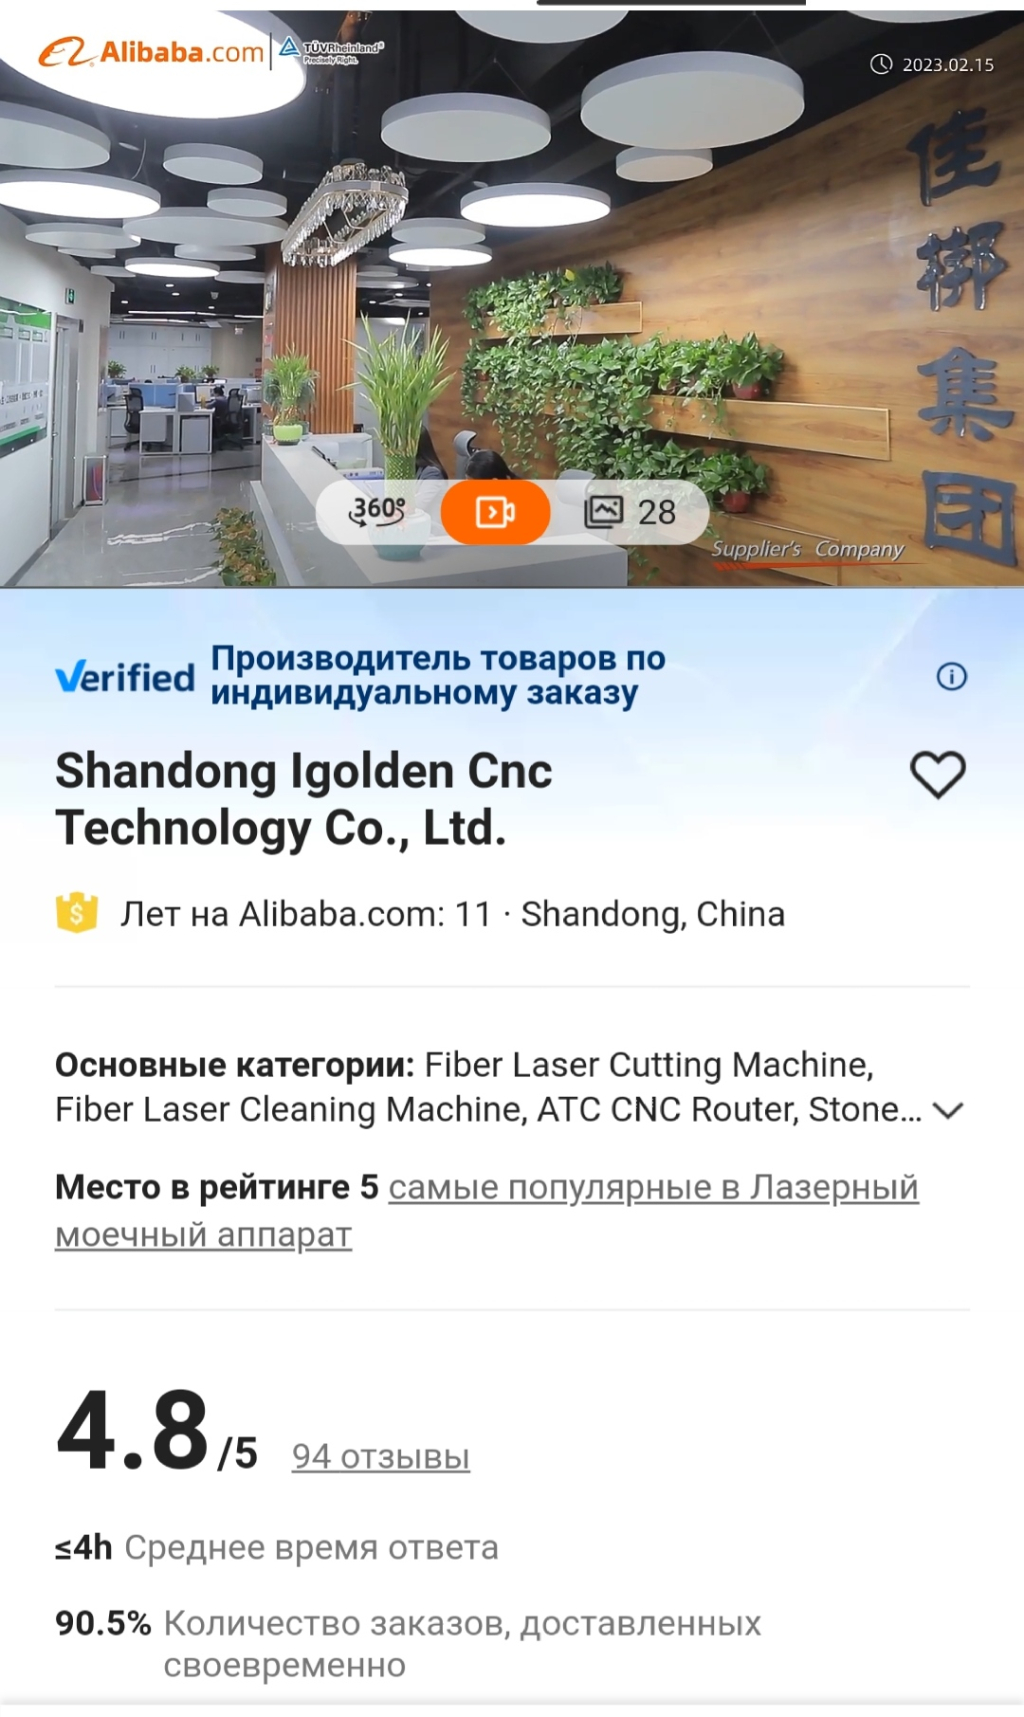 Alibaba.com - Компания igolden cnc technology co., ltdАлибаба.Китайский производител